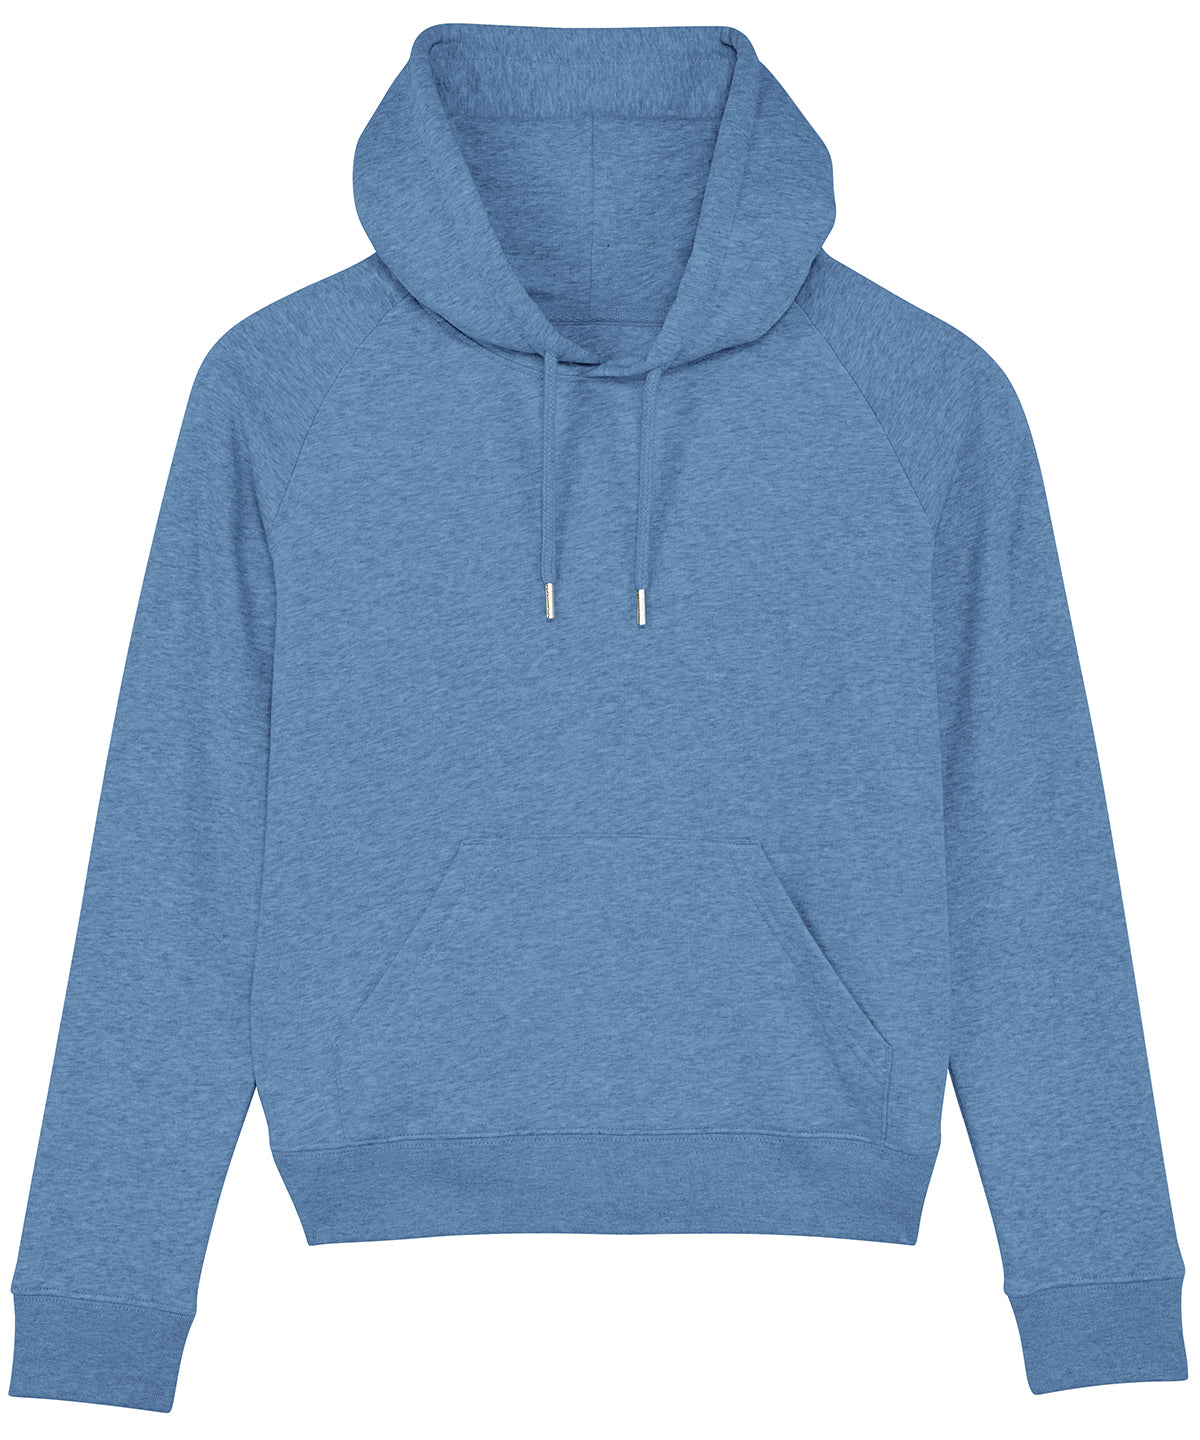 Hettupeysur - Women's Stella Trigger Iconic Hoodie Sweatshirt  (STSW148)